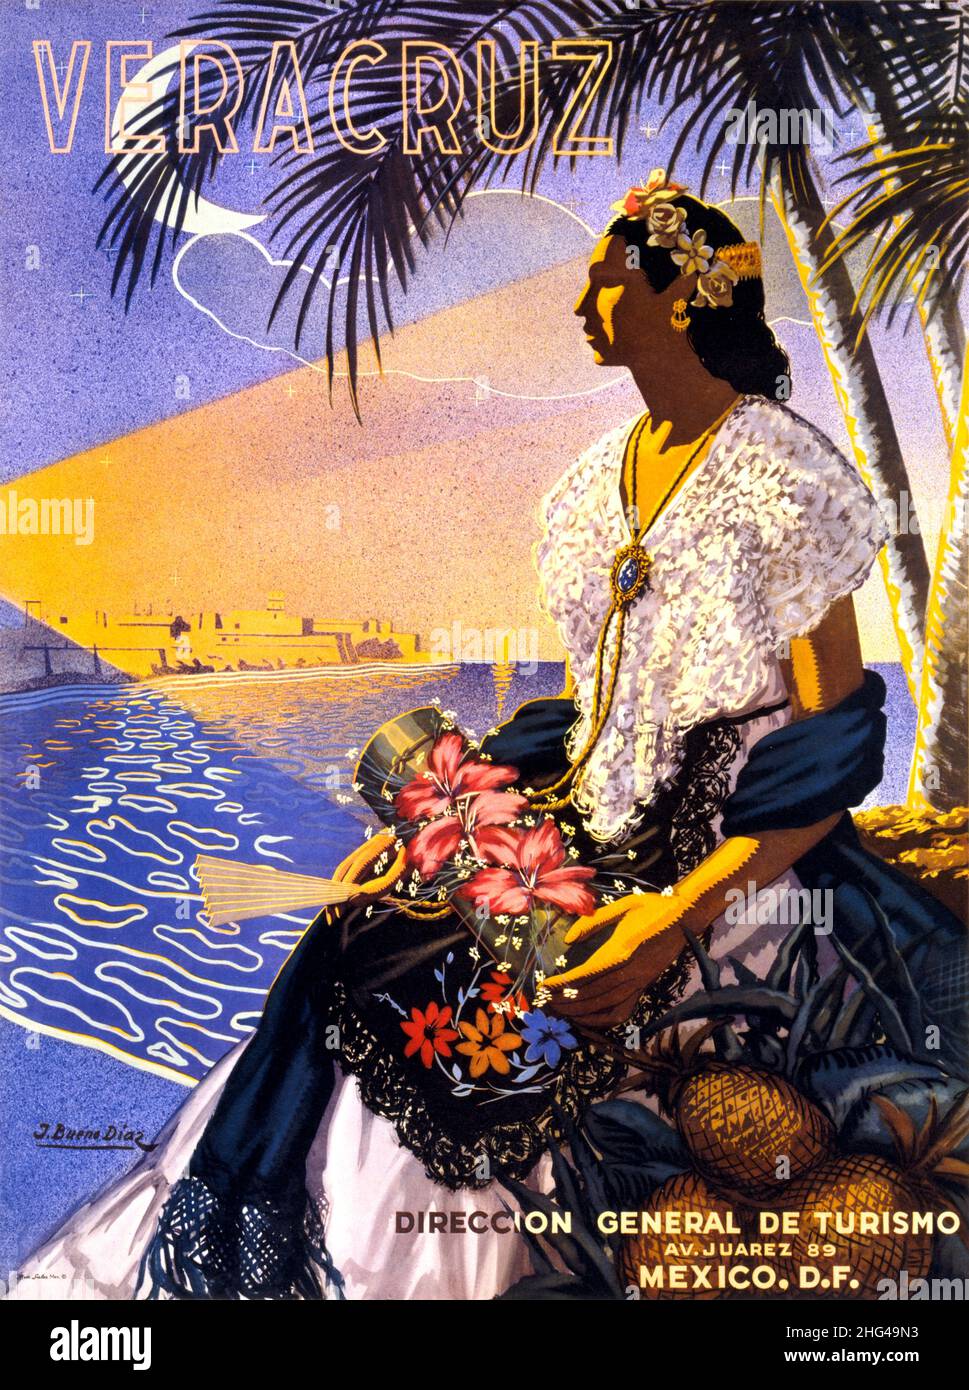 Veracruz von José Xeno Diaz (1915-?). Plakat veröffentlicht 1951 in Mexiko. Stockfoto